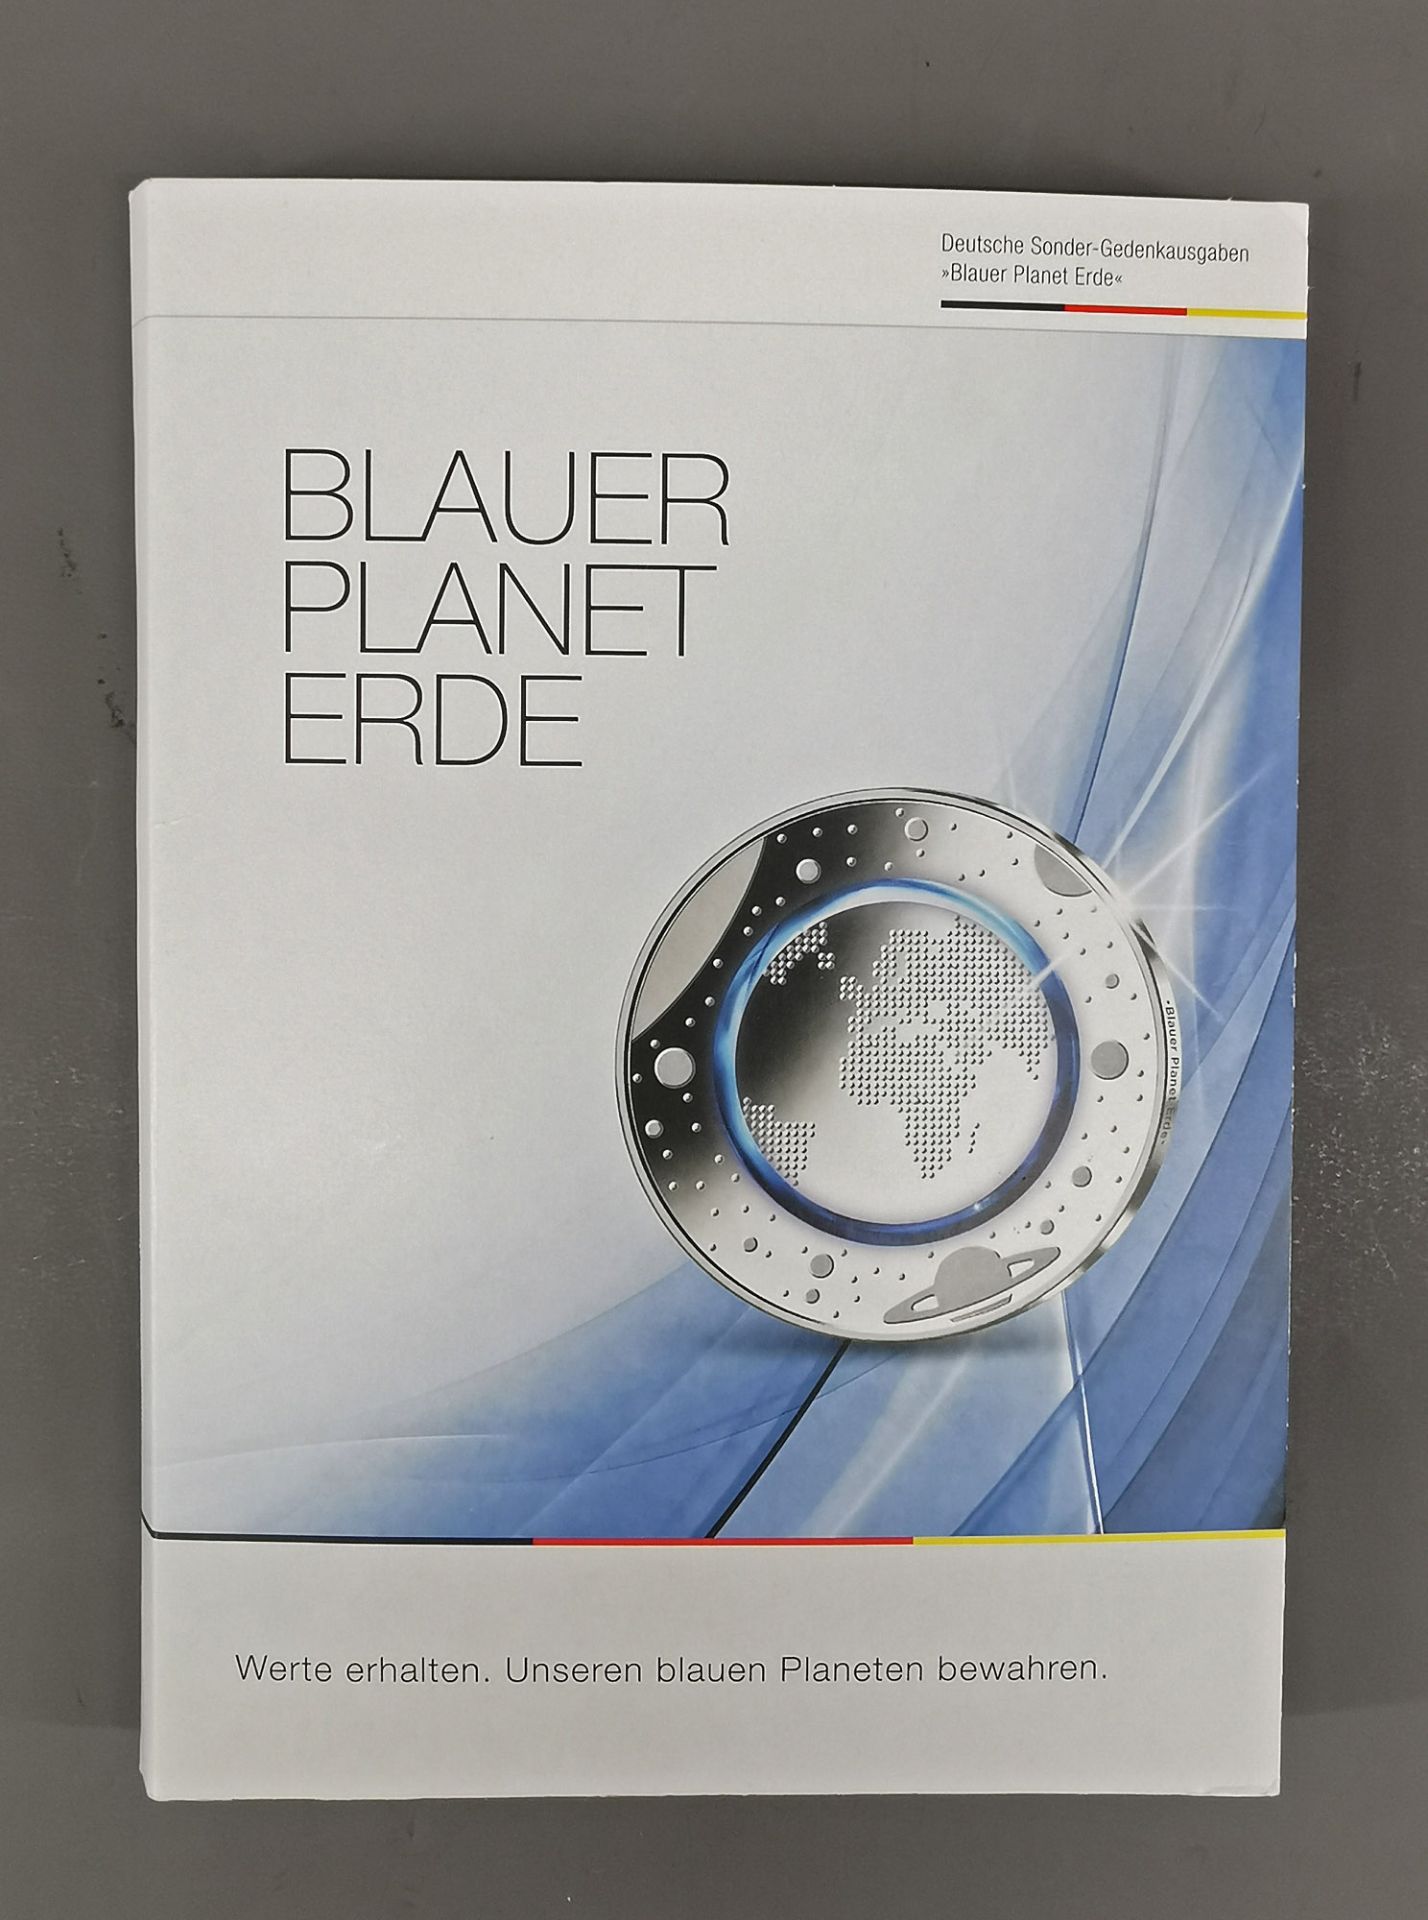 Deutsche Sonder-Gedenkausgabe Blauer Planet Erde - Image 4 of 4